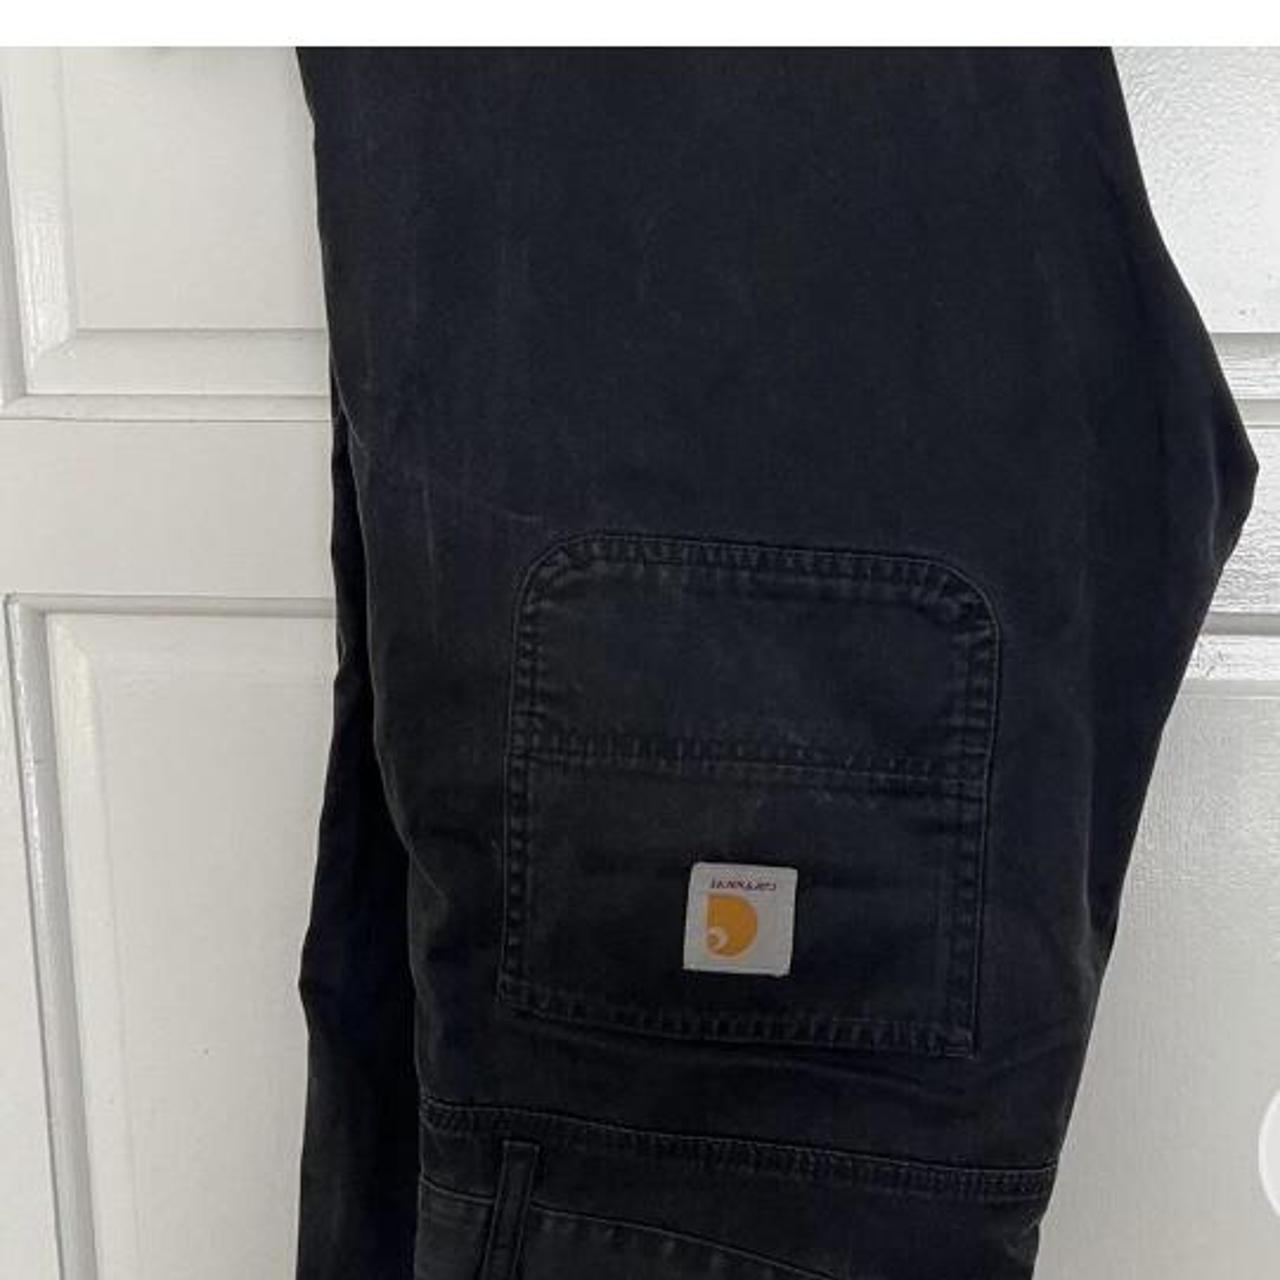 Carhart black baggy jeans Buy through Depop PayPal... - Depop